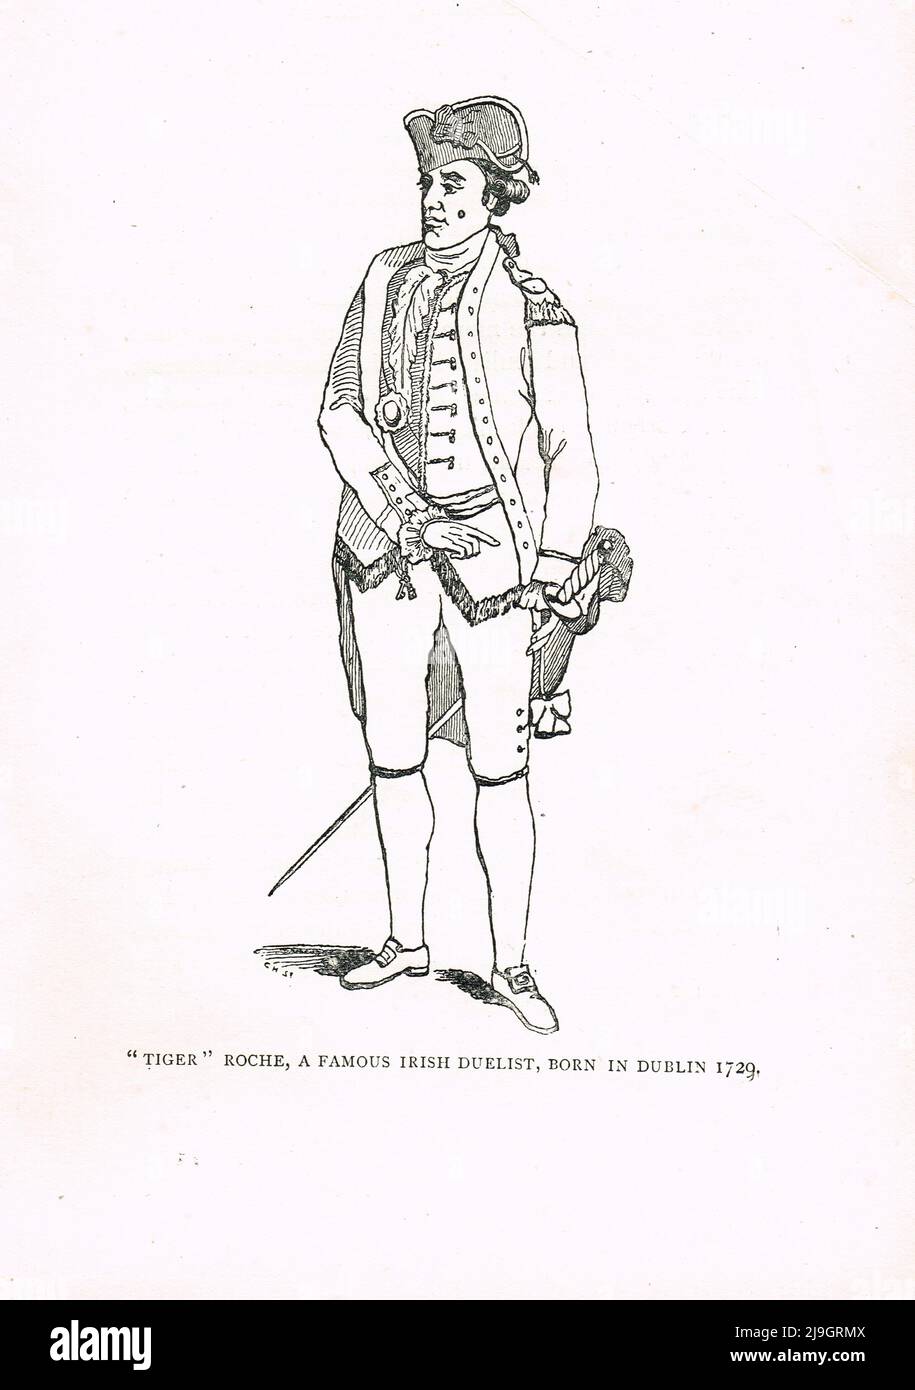 Tiger Roche celebró el soldado del siglo 18th, duelista y aventurero Foto de stock